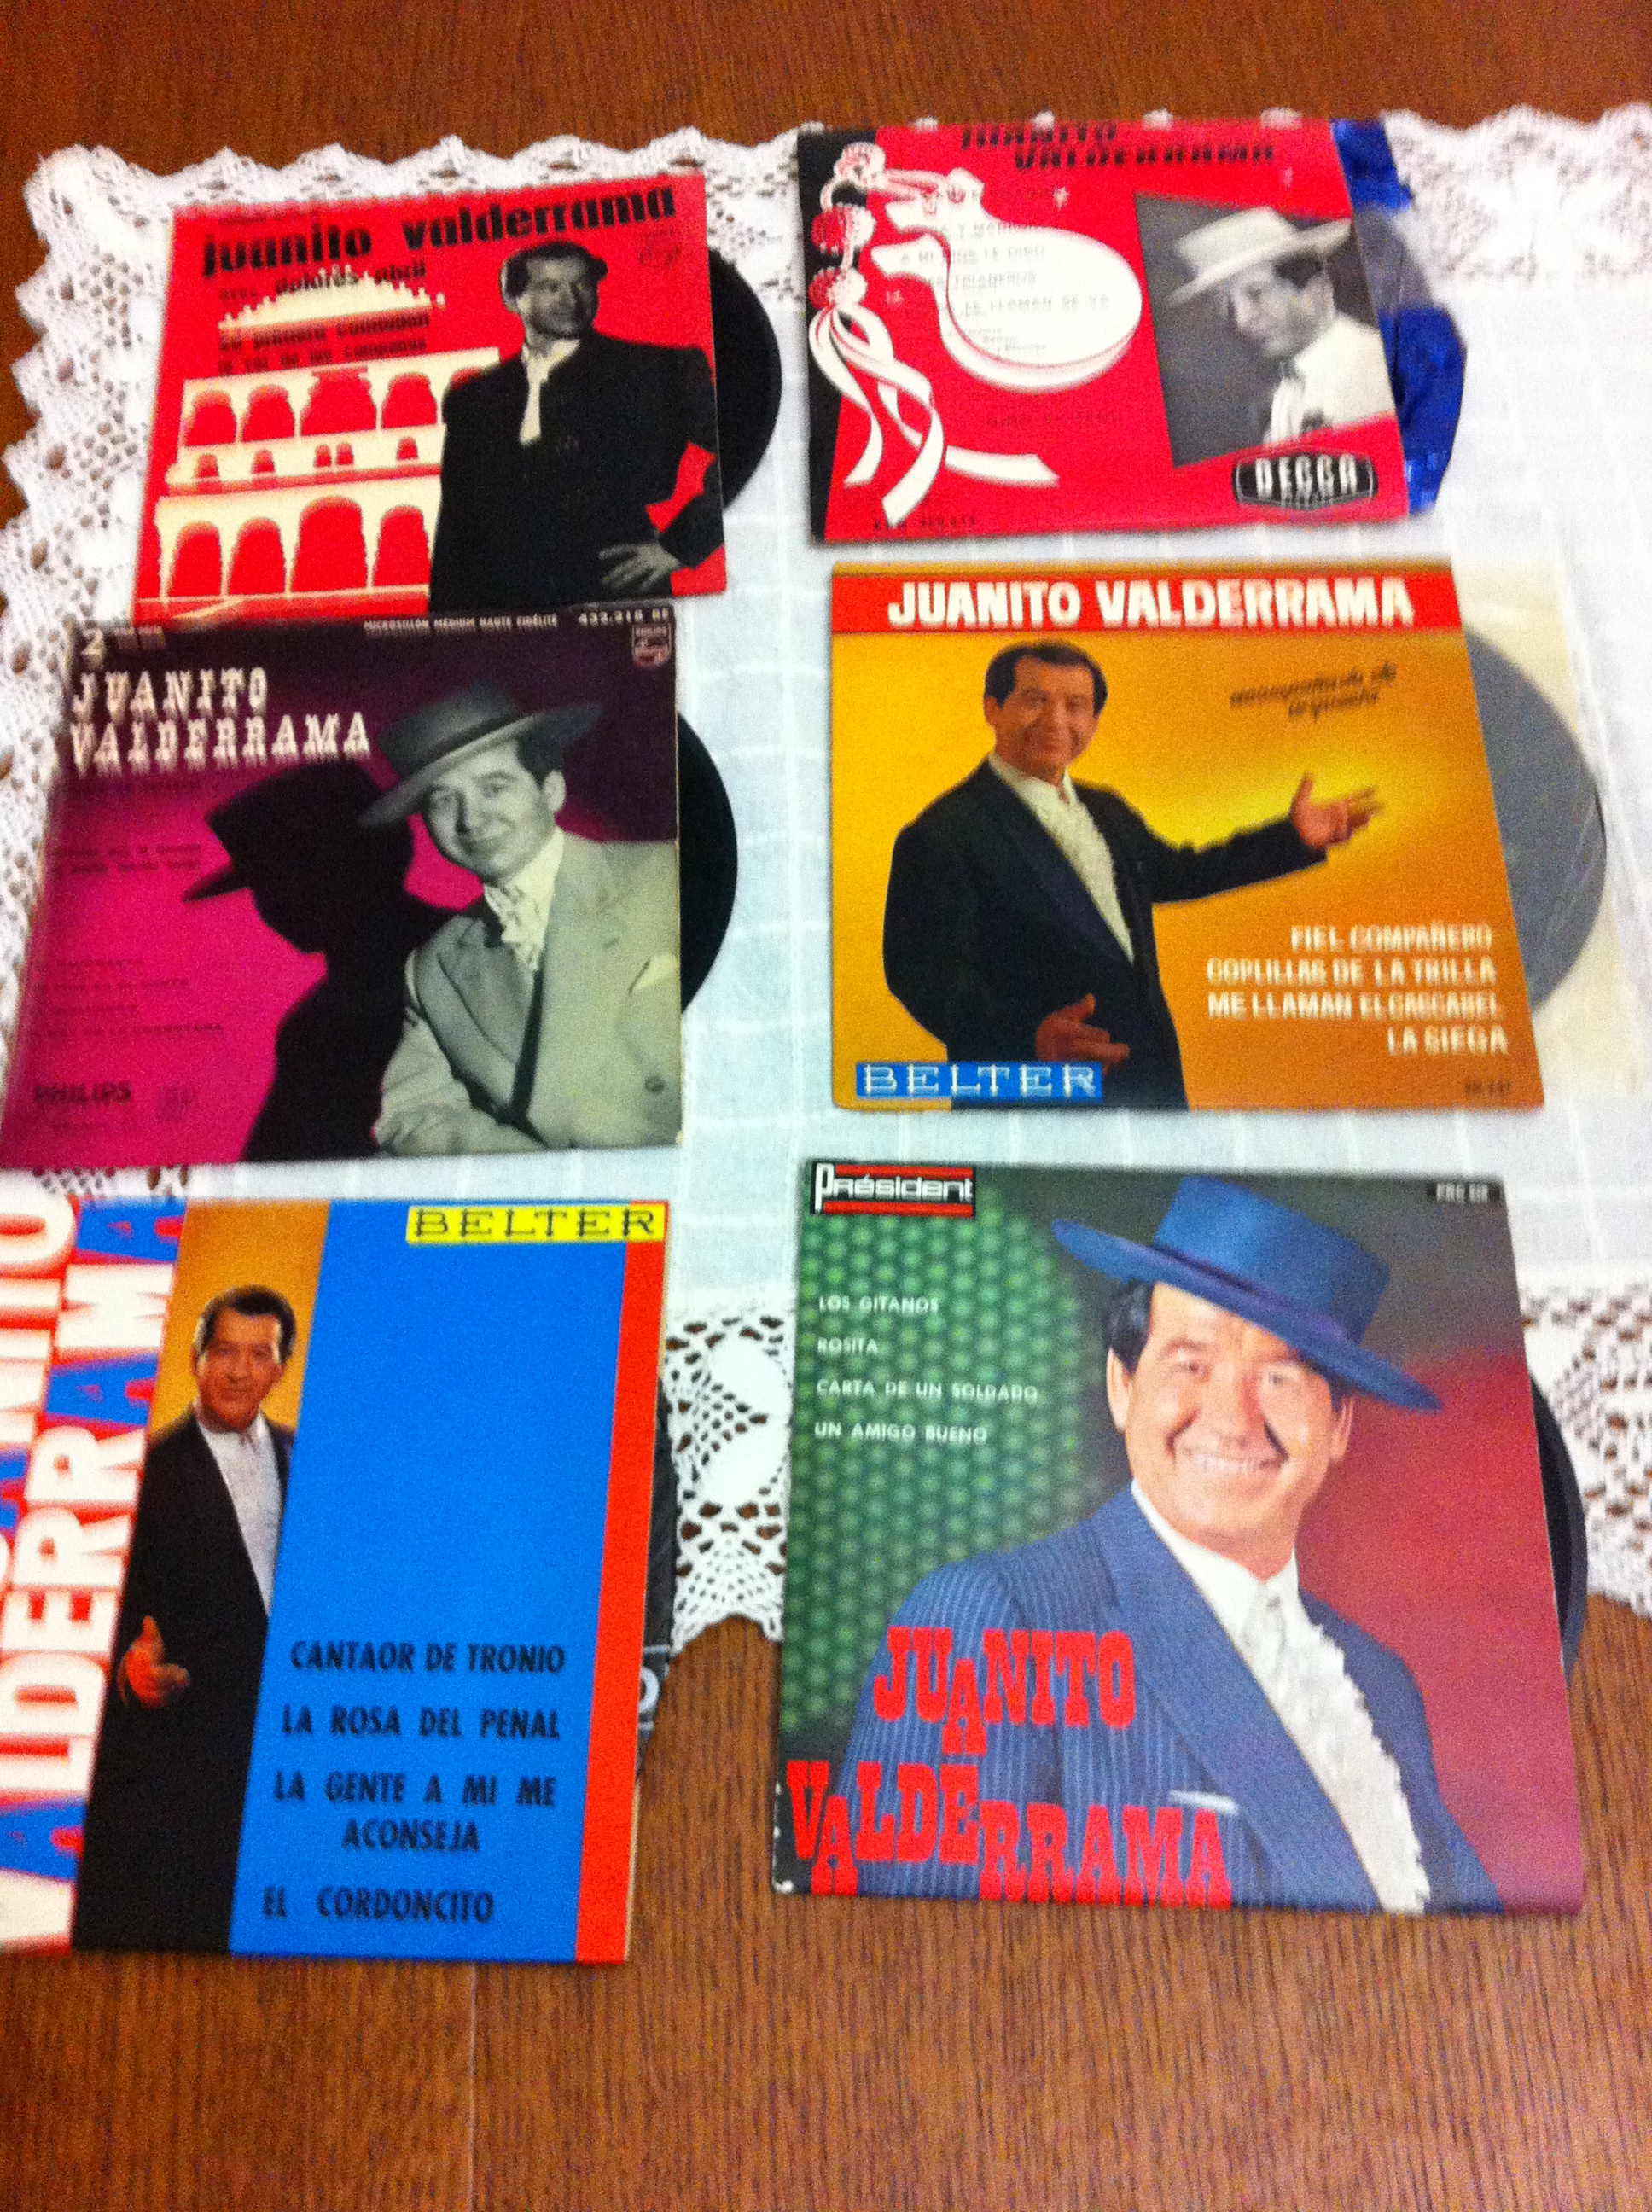 Flamenco cassette et disque vinyle   - Page 3 14022309583414950712010050